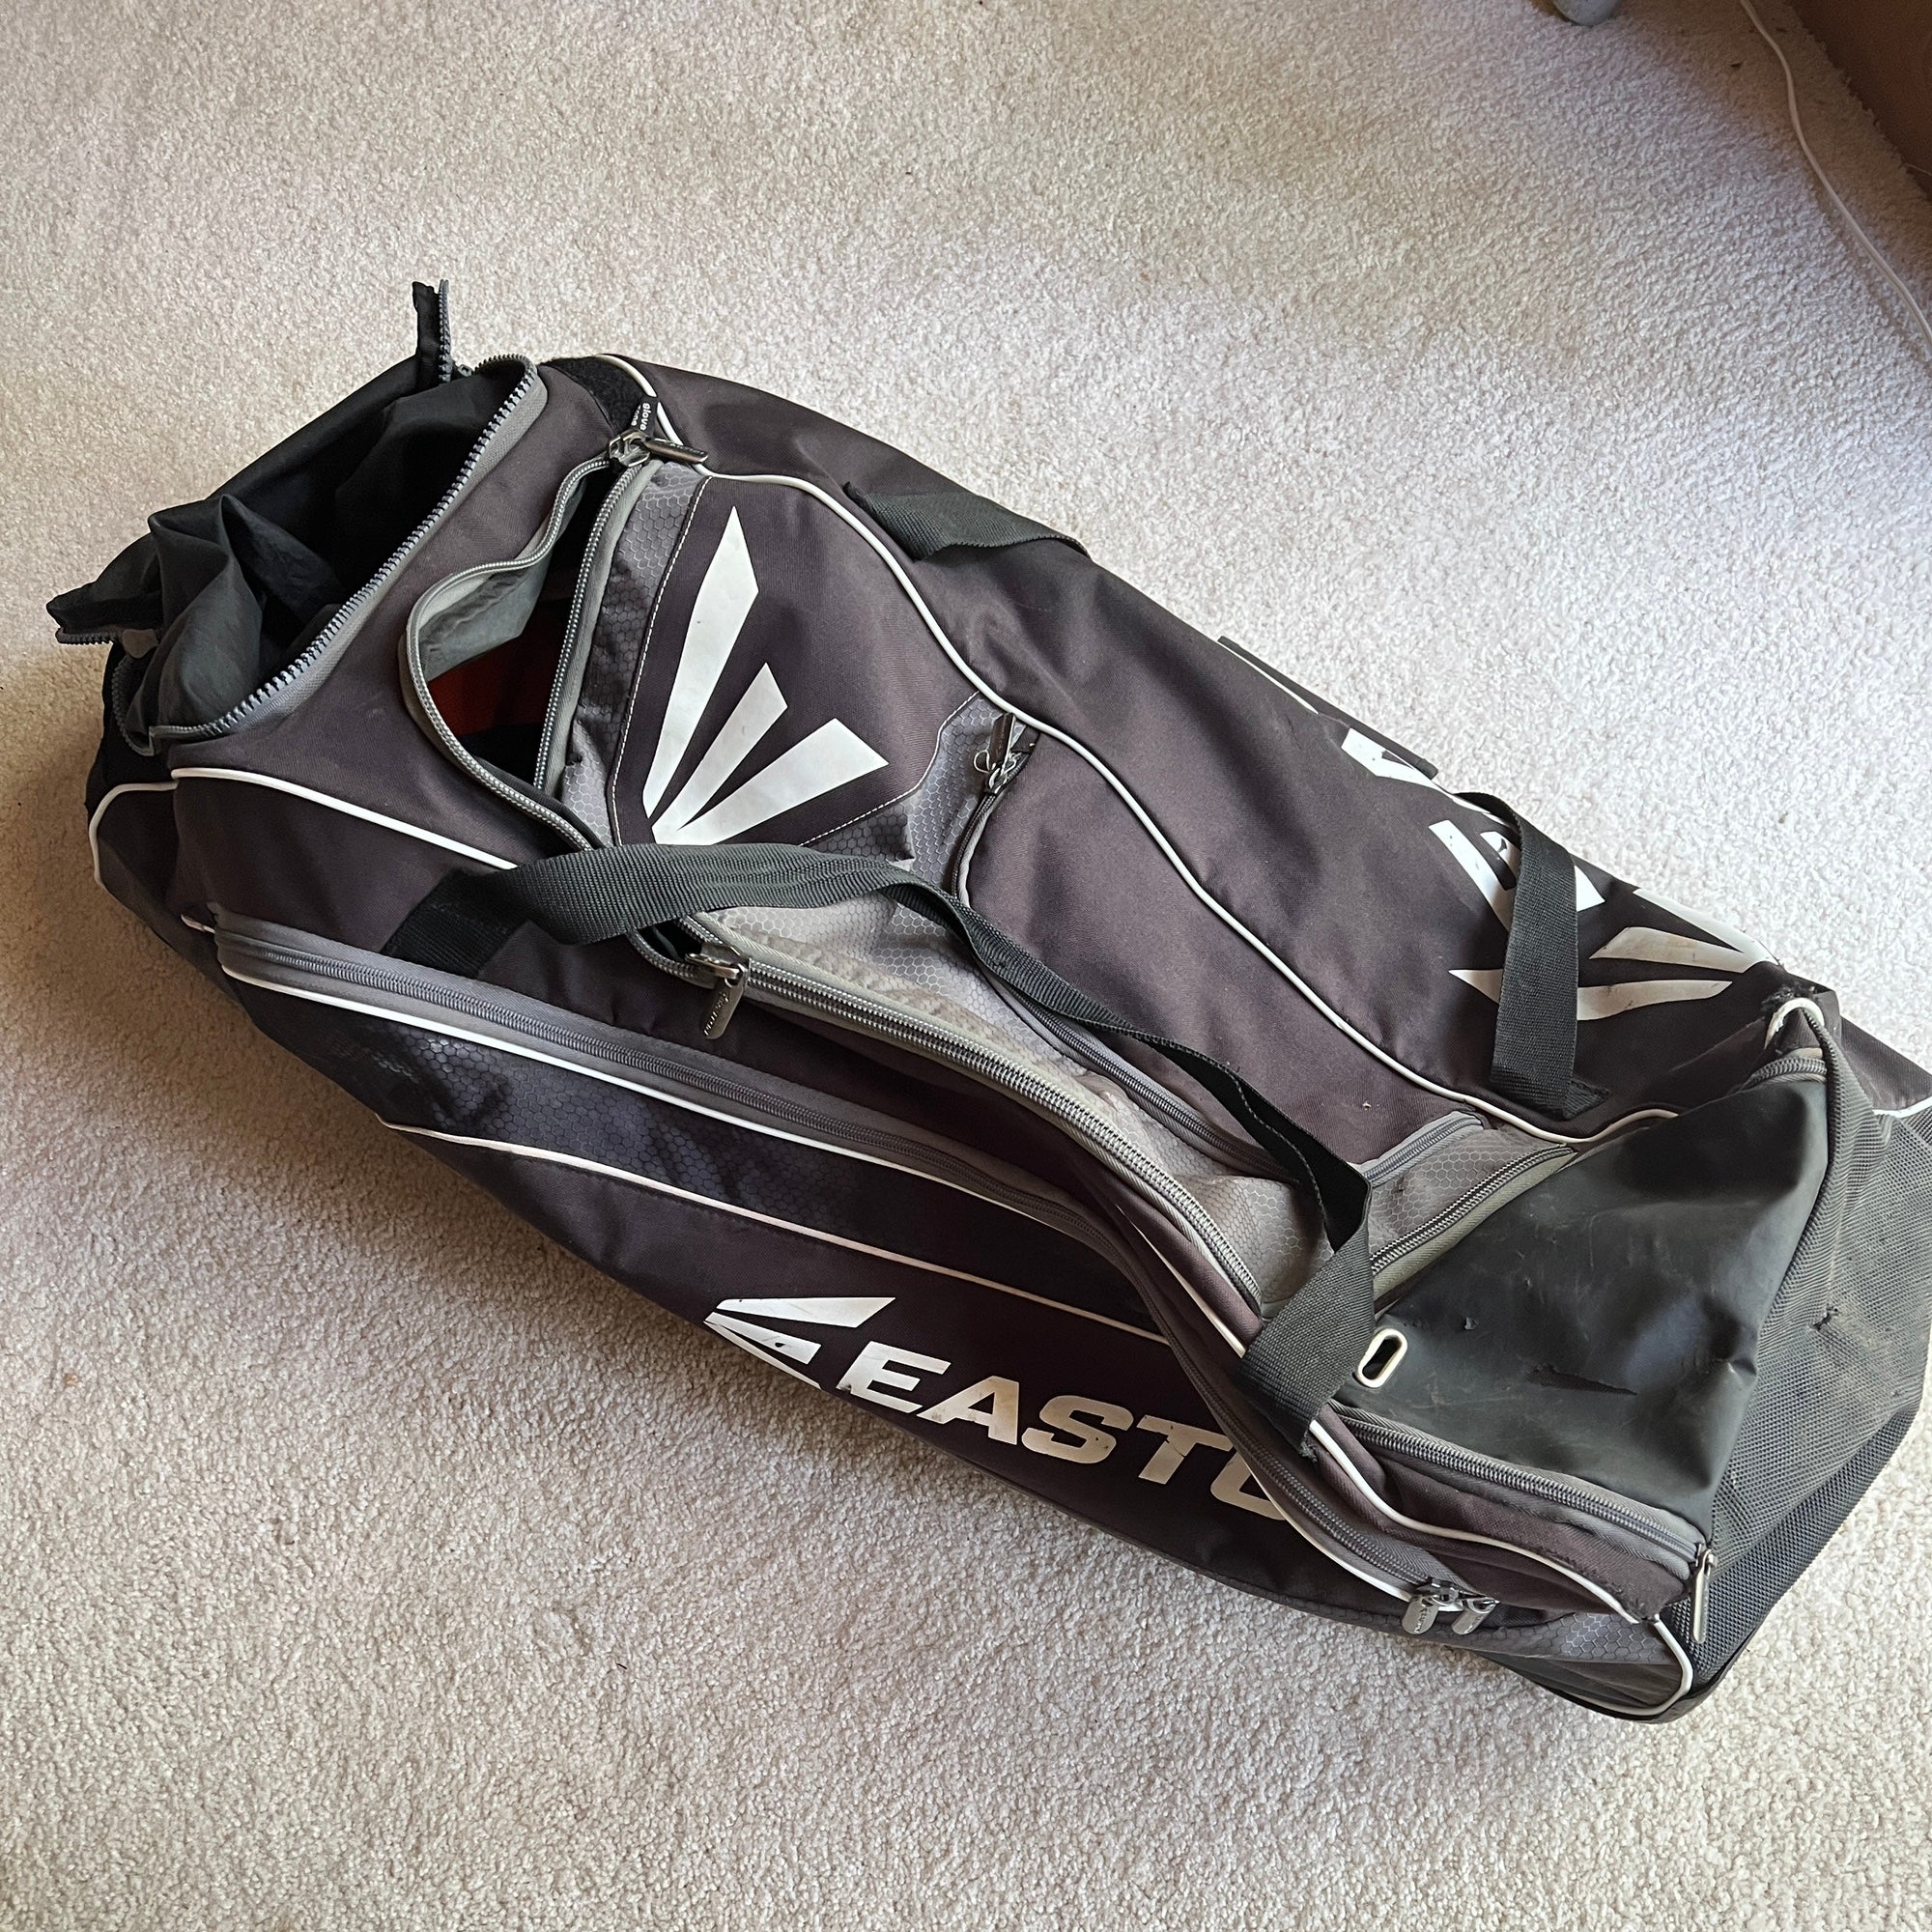 Easton E500w Wheeled Bag Black/Grey Baseball/ Softball Heavy Duty ...